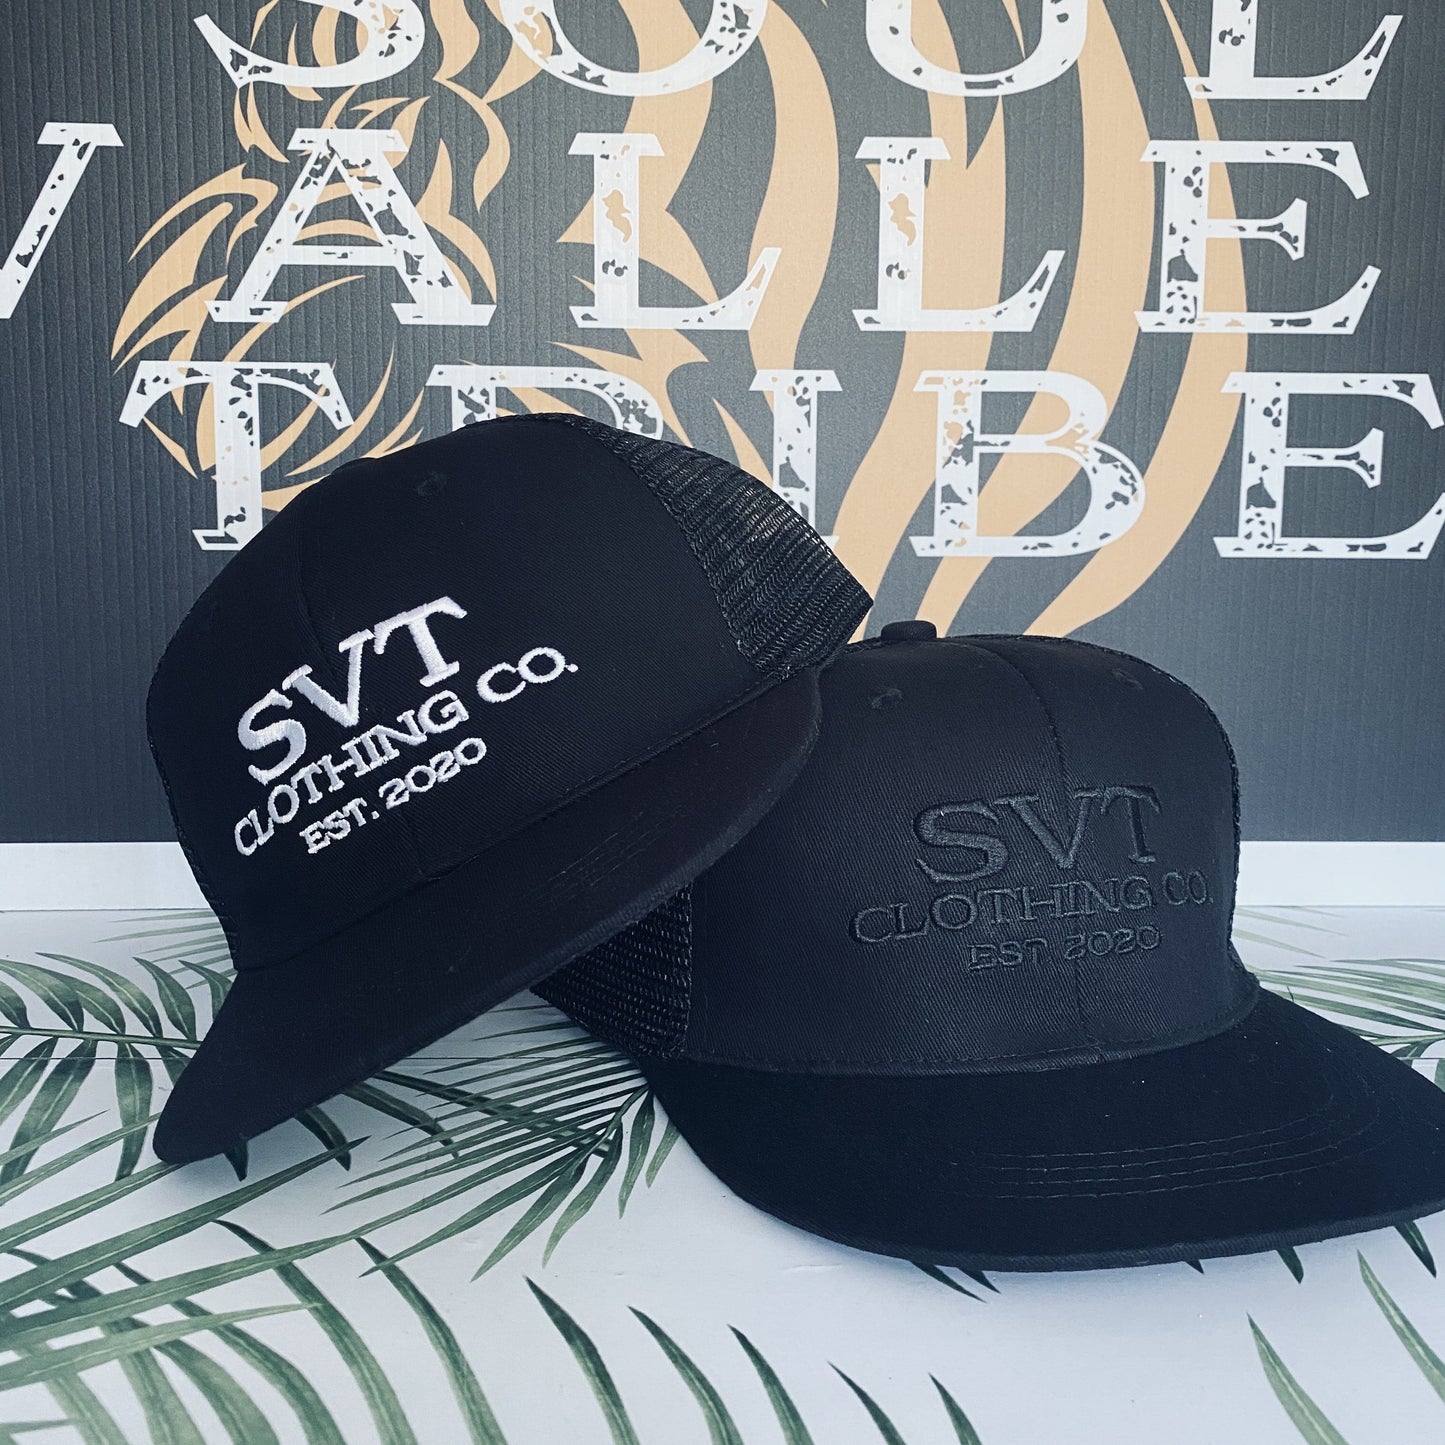 soulvalleytribe SVT Clothing Co. Black Logo Hat Hat